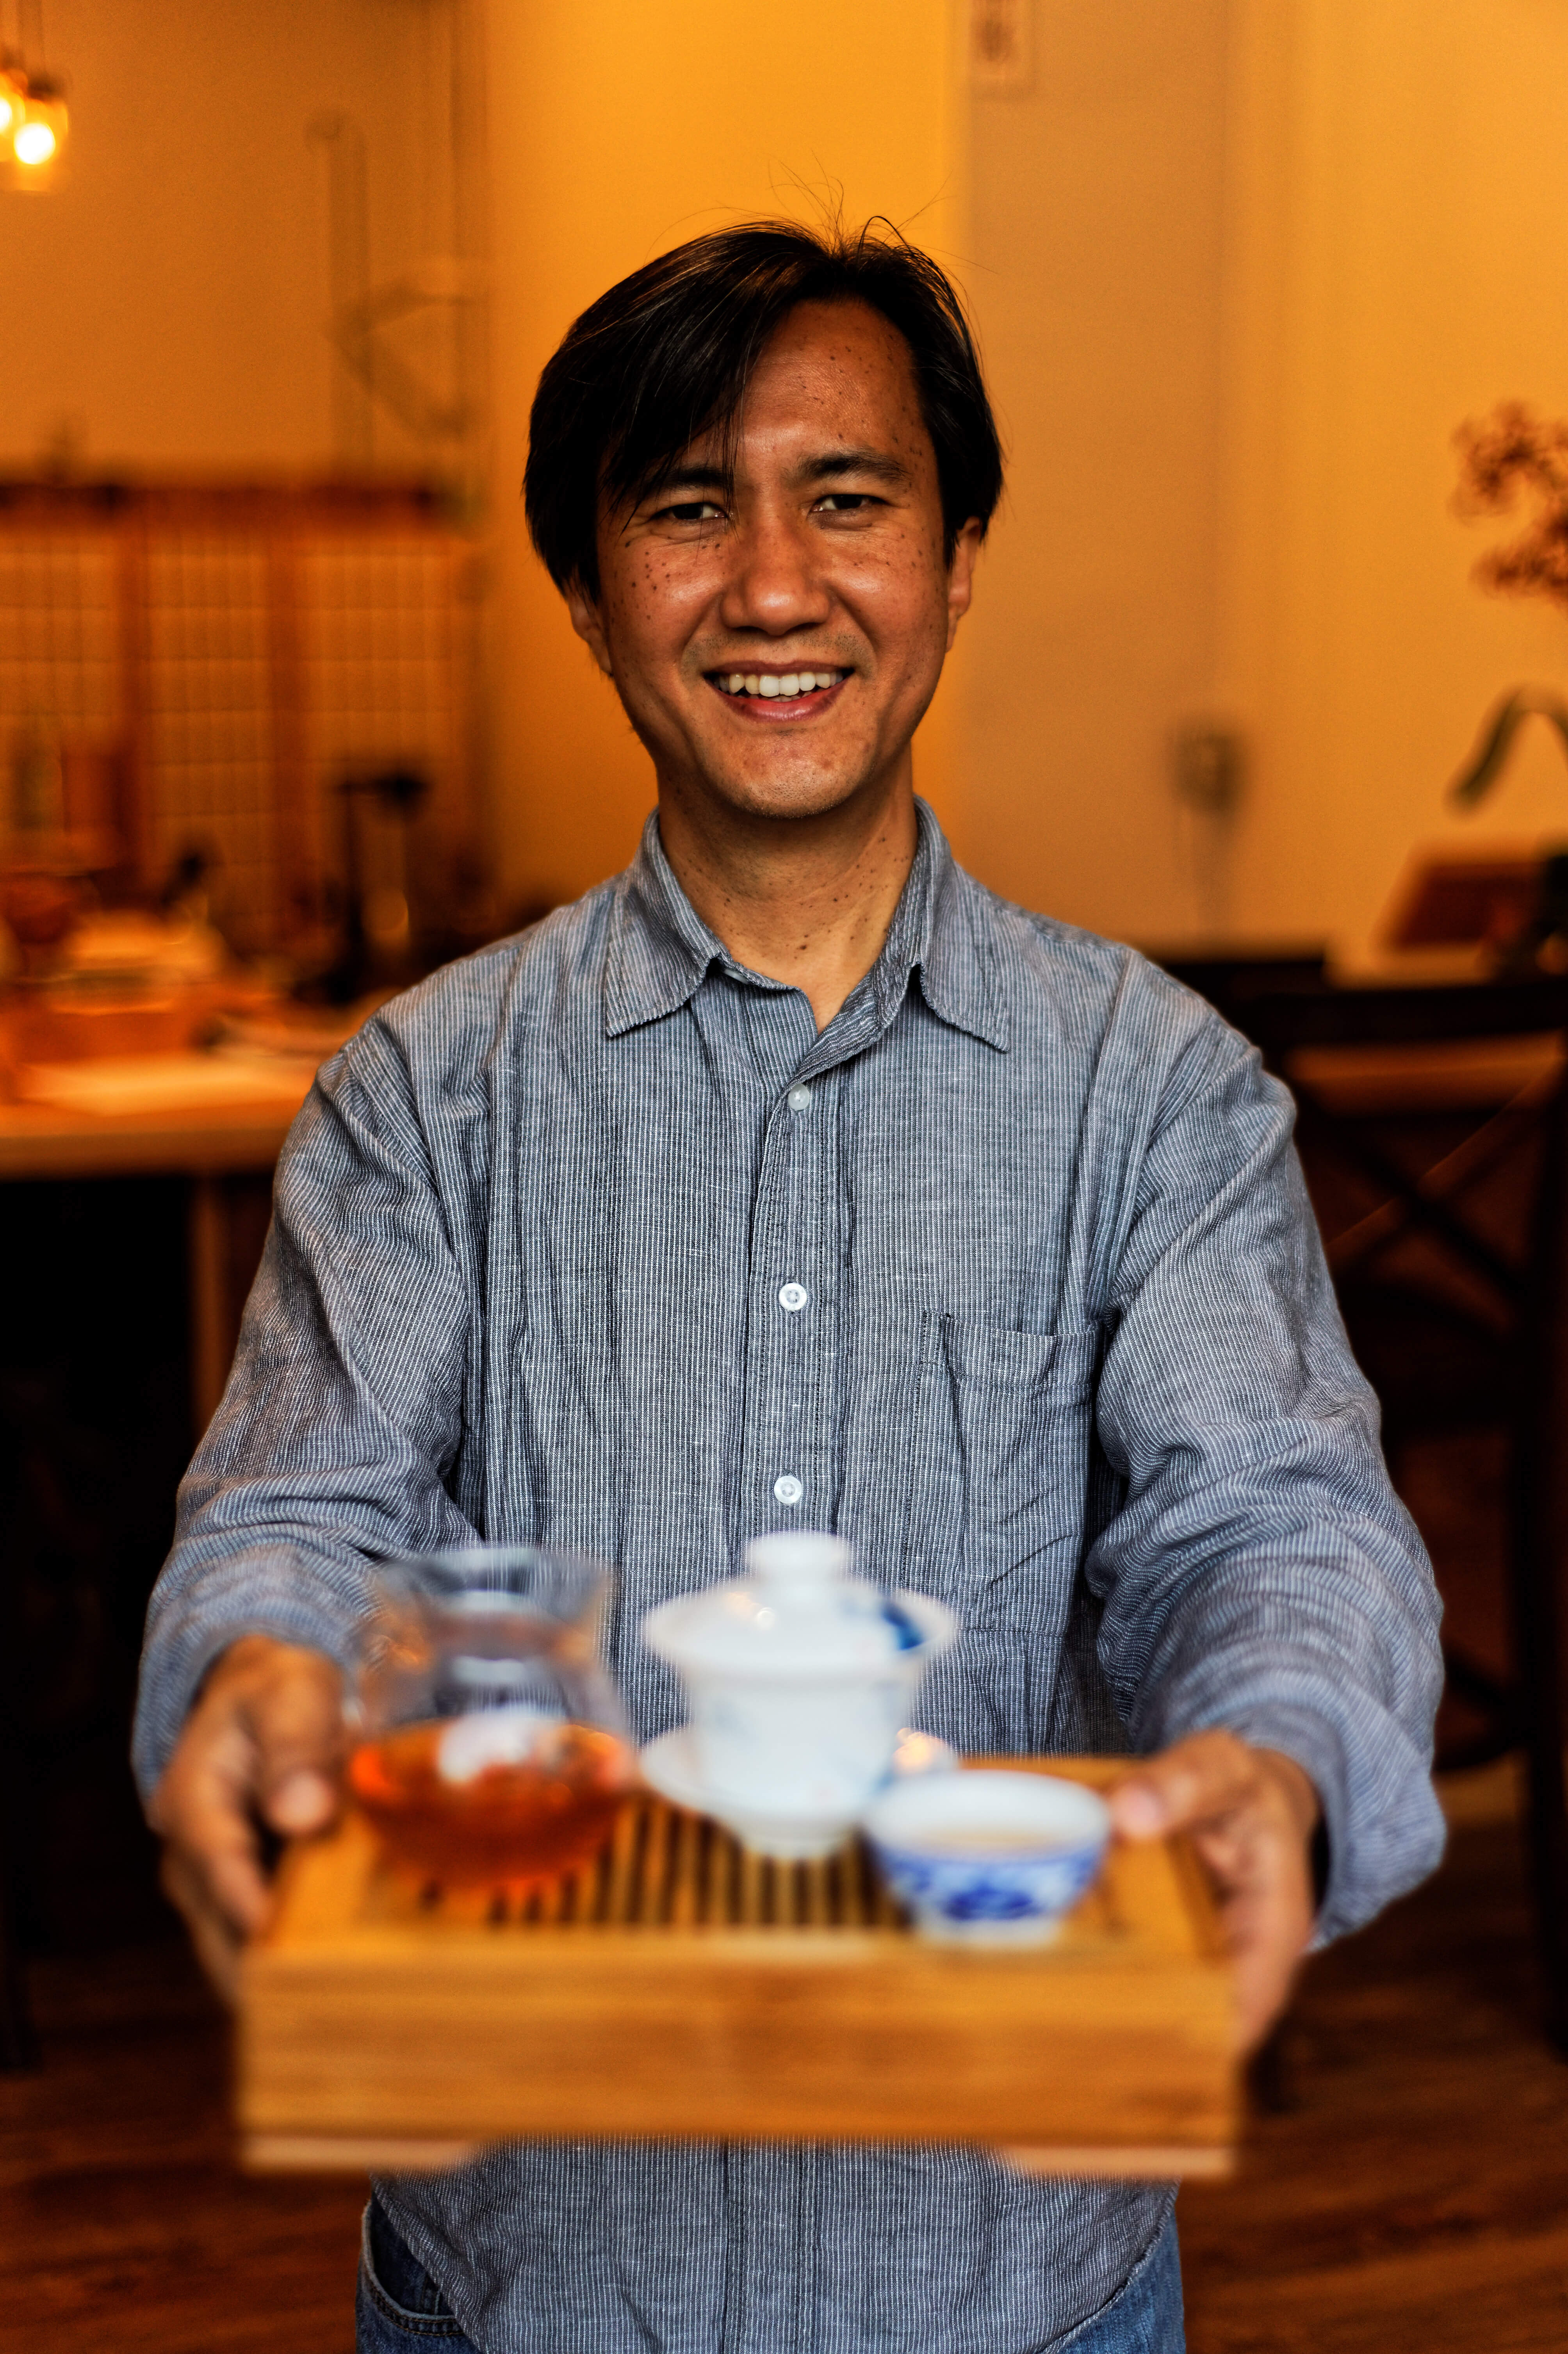 Tea guru Niraj Lama teaches Rochester to take time for tea